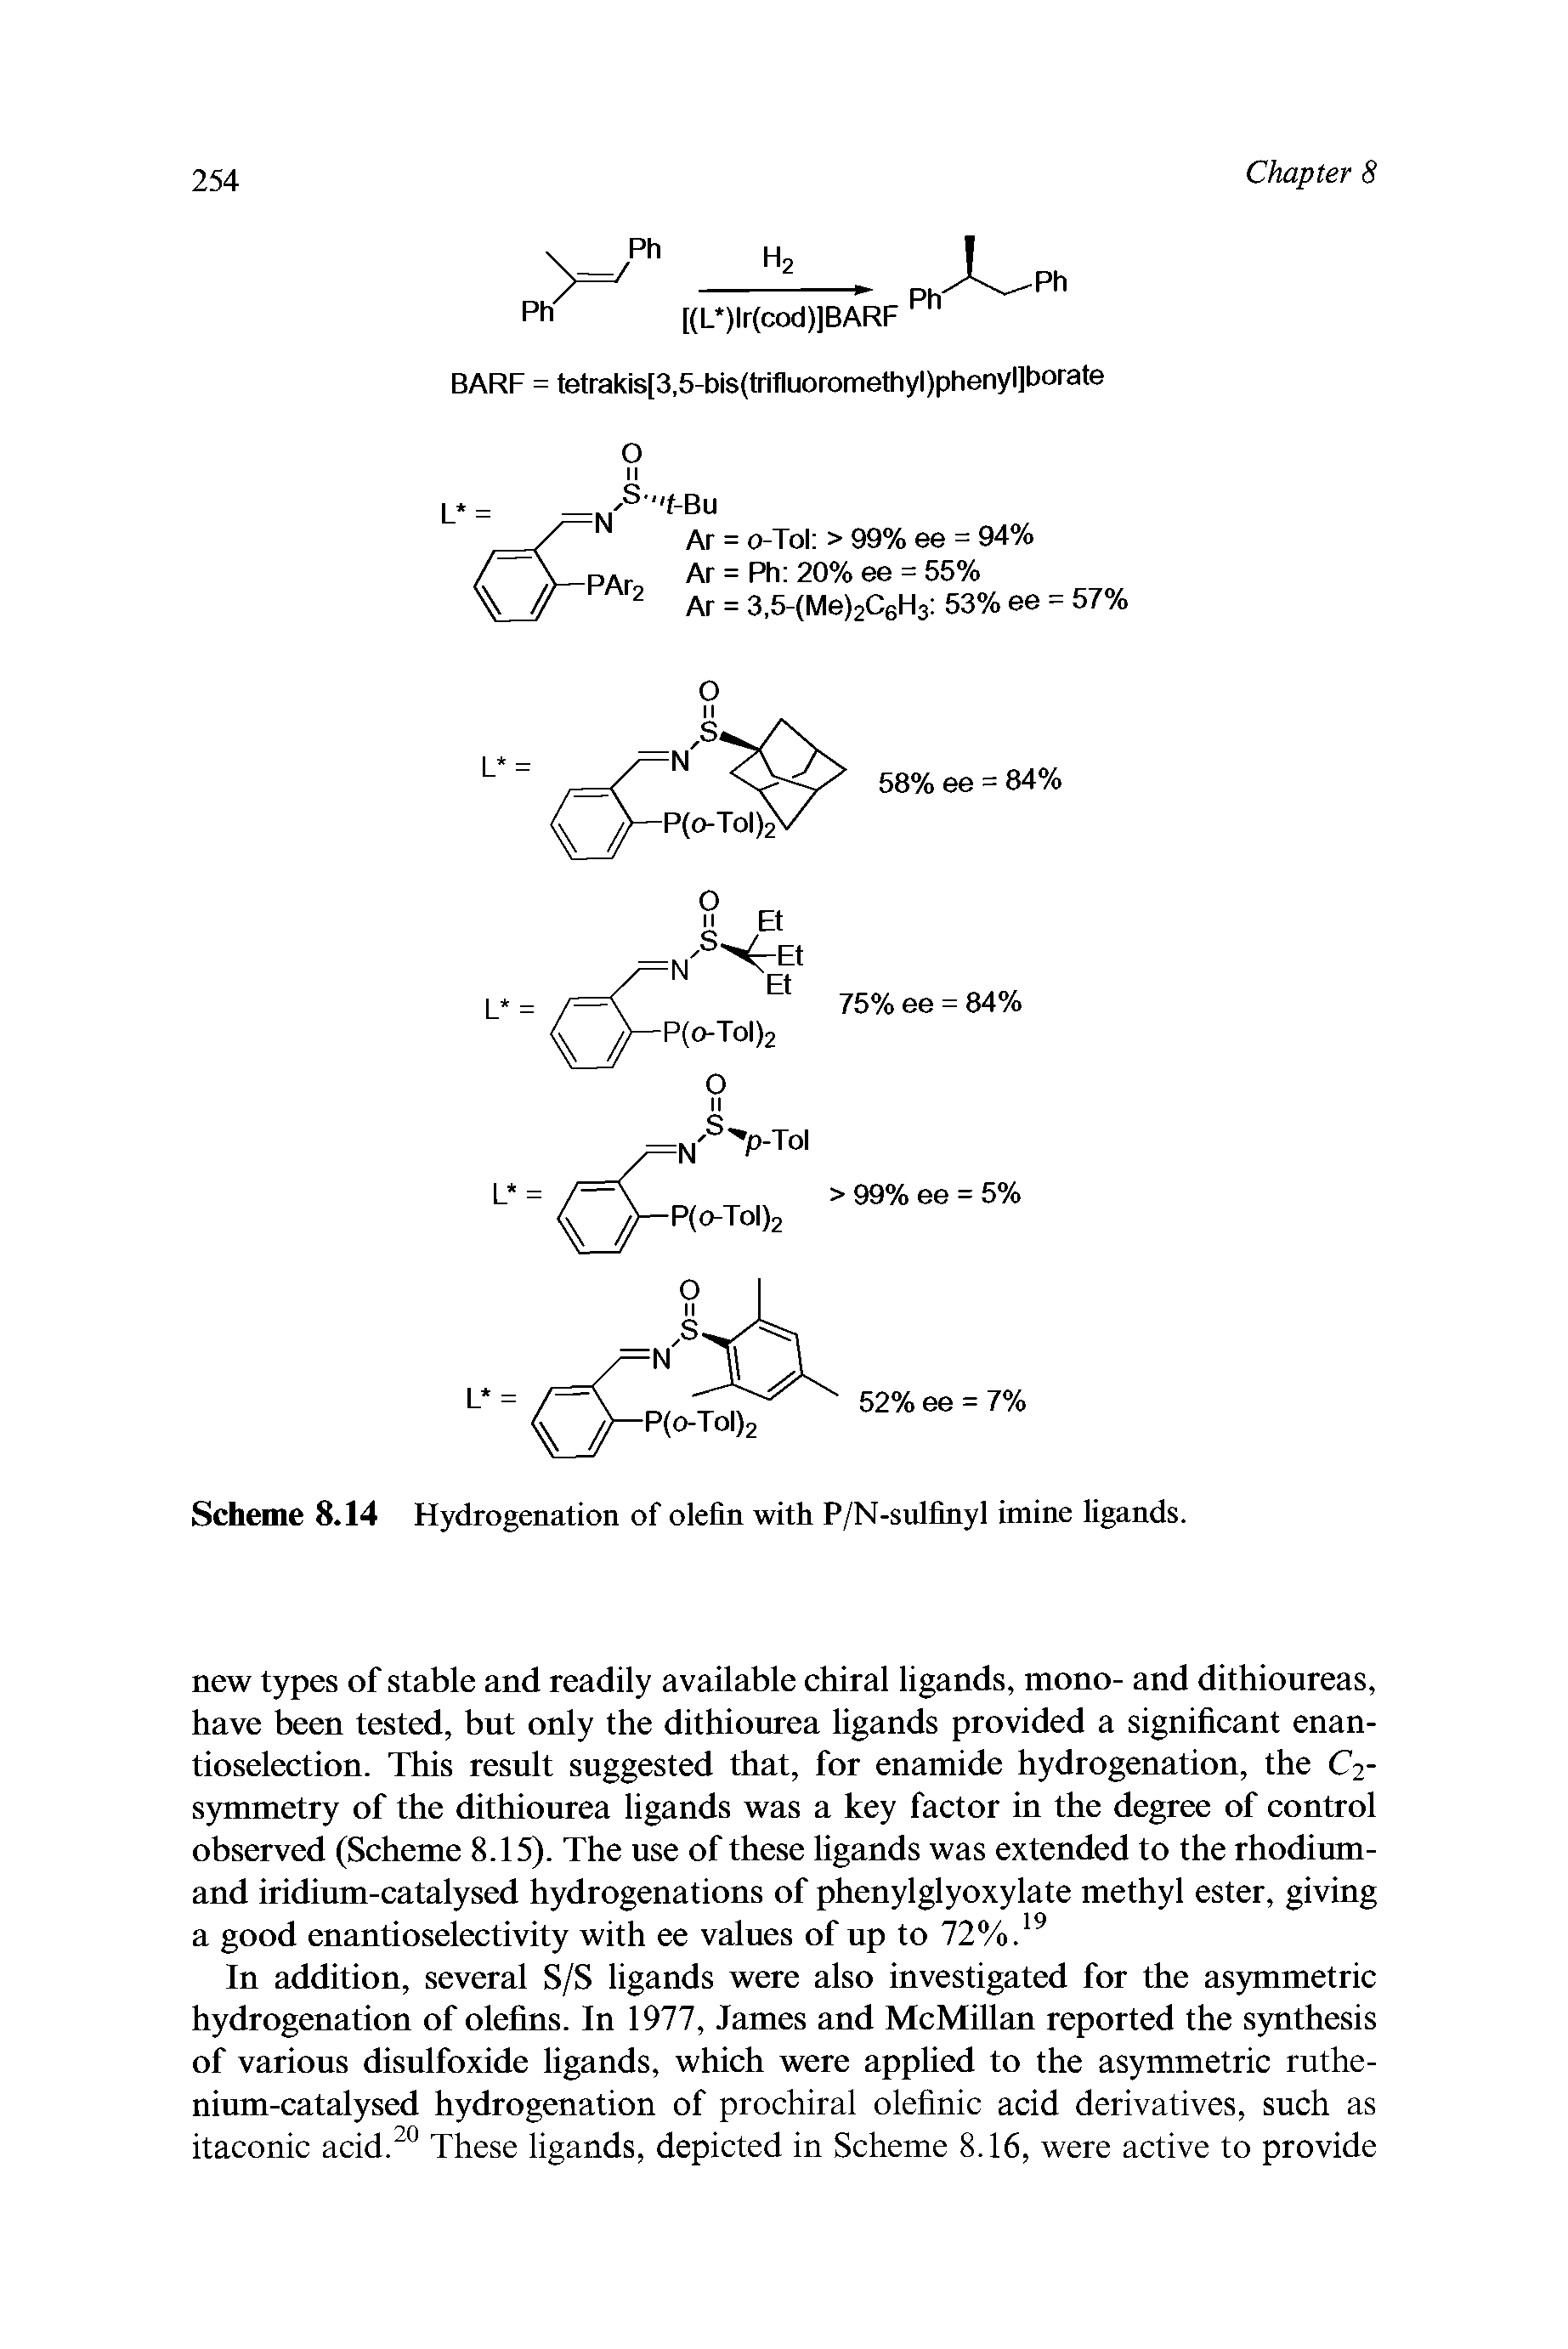 Scheme 8.14 Hydrogenation of olefin with P/N-sulfinyl imine ligands.